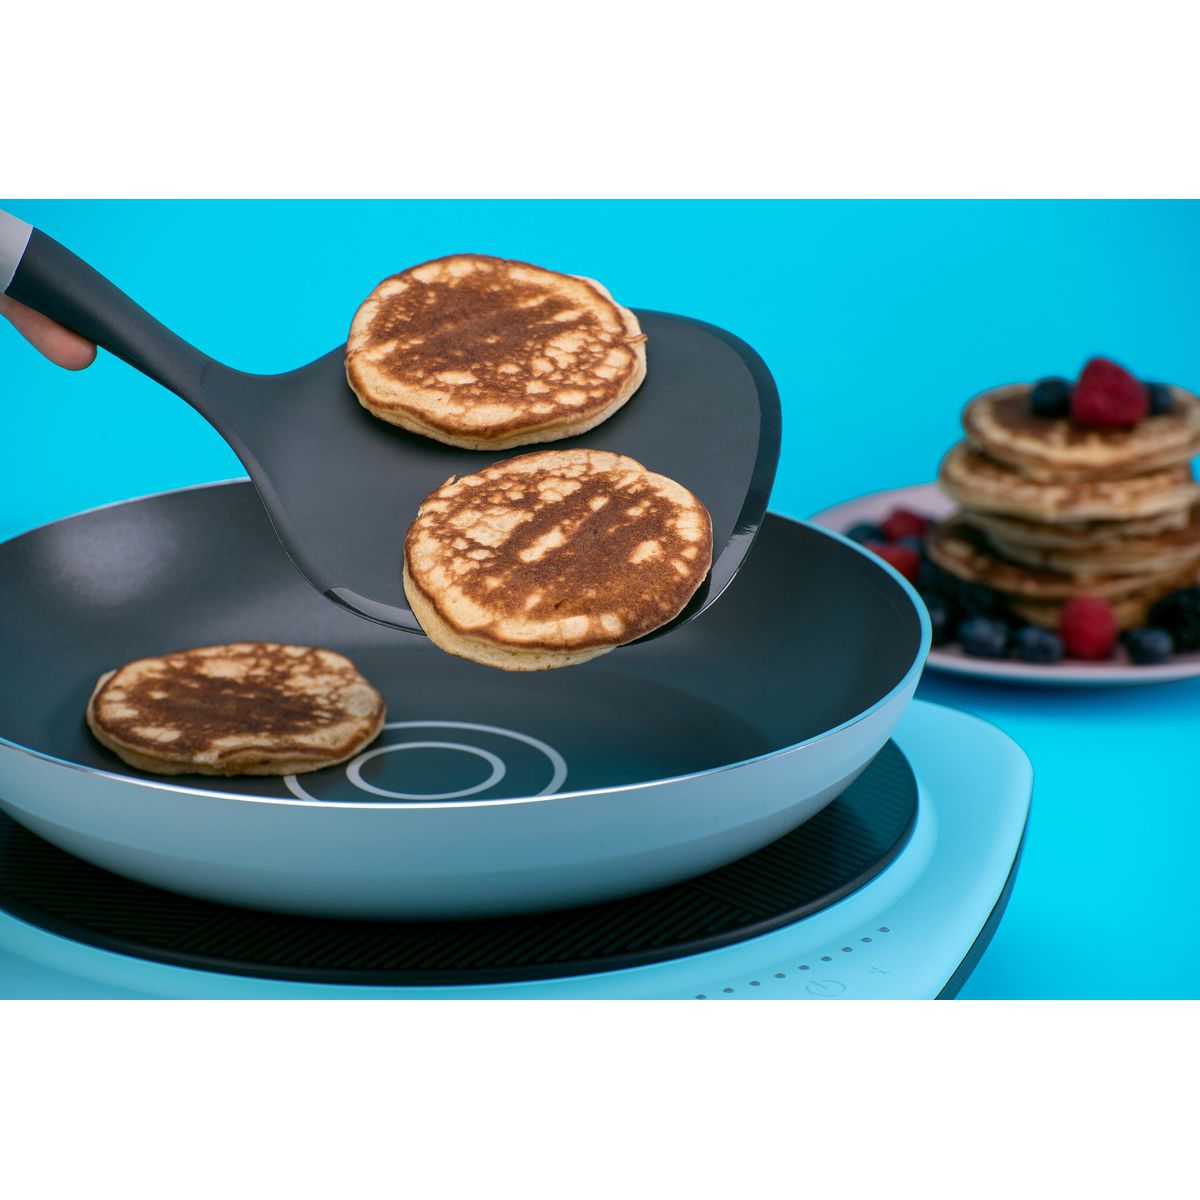 Spatule pour pancakes extra large 34 cm Tasty Core